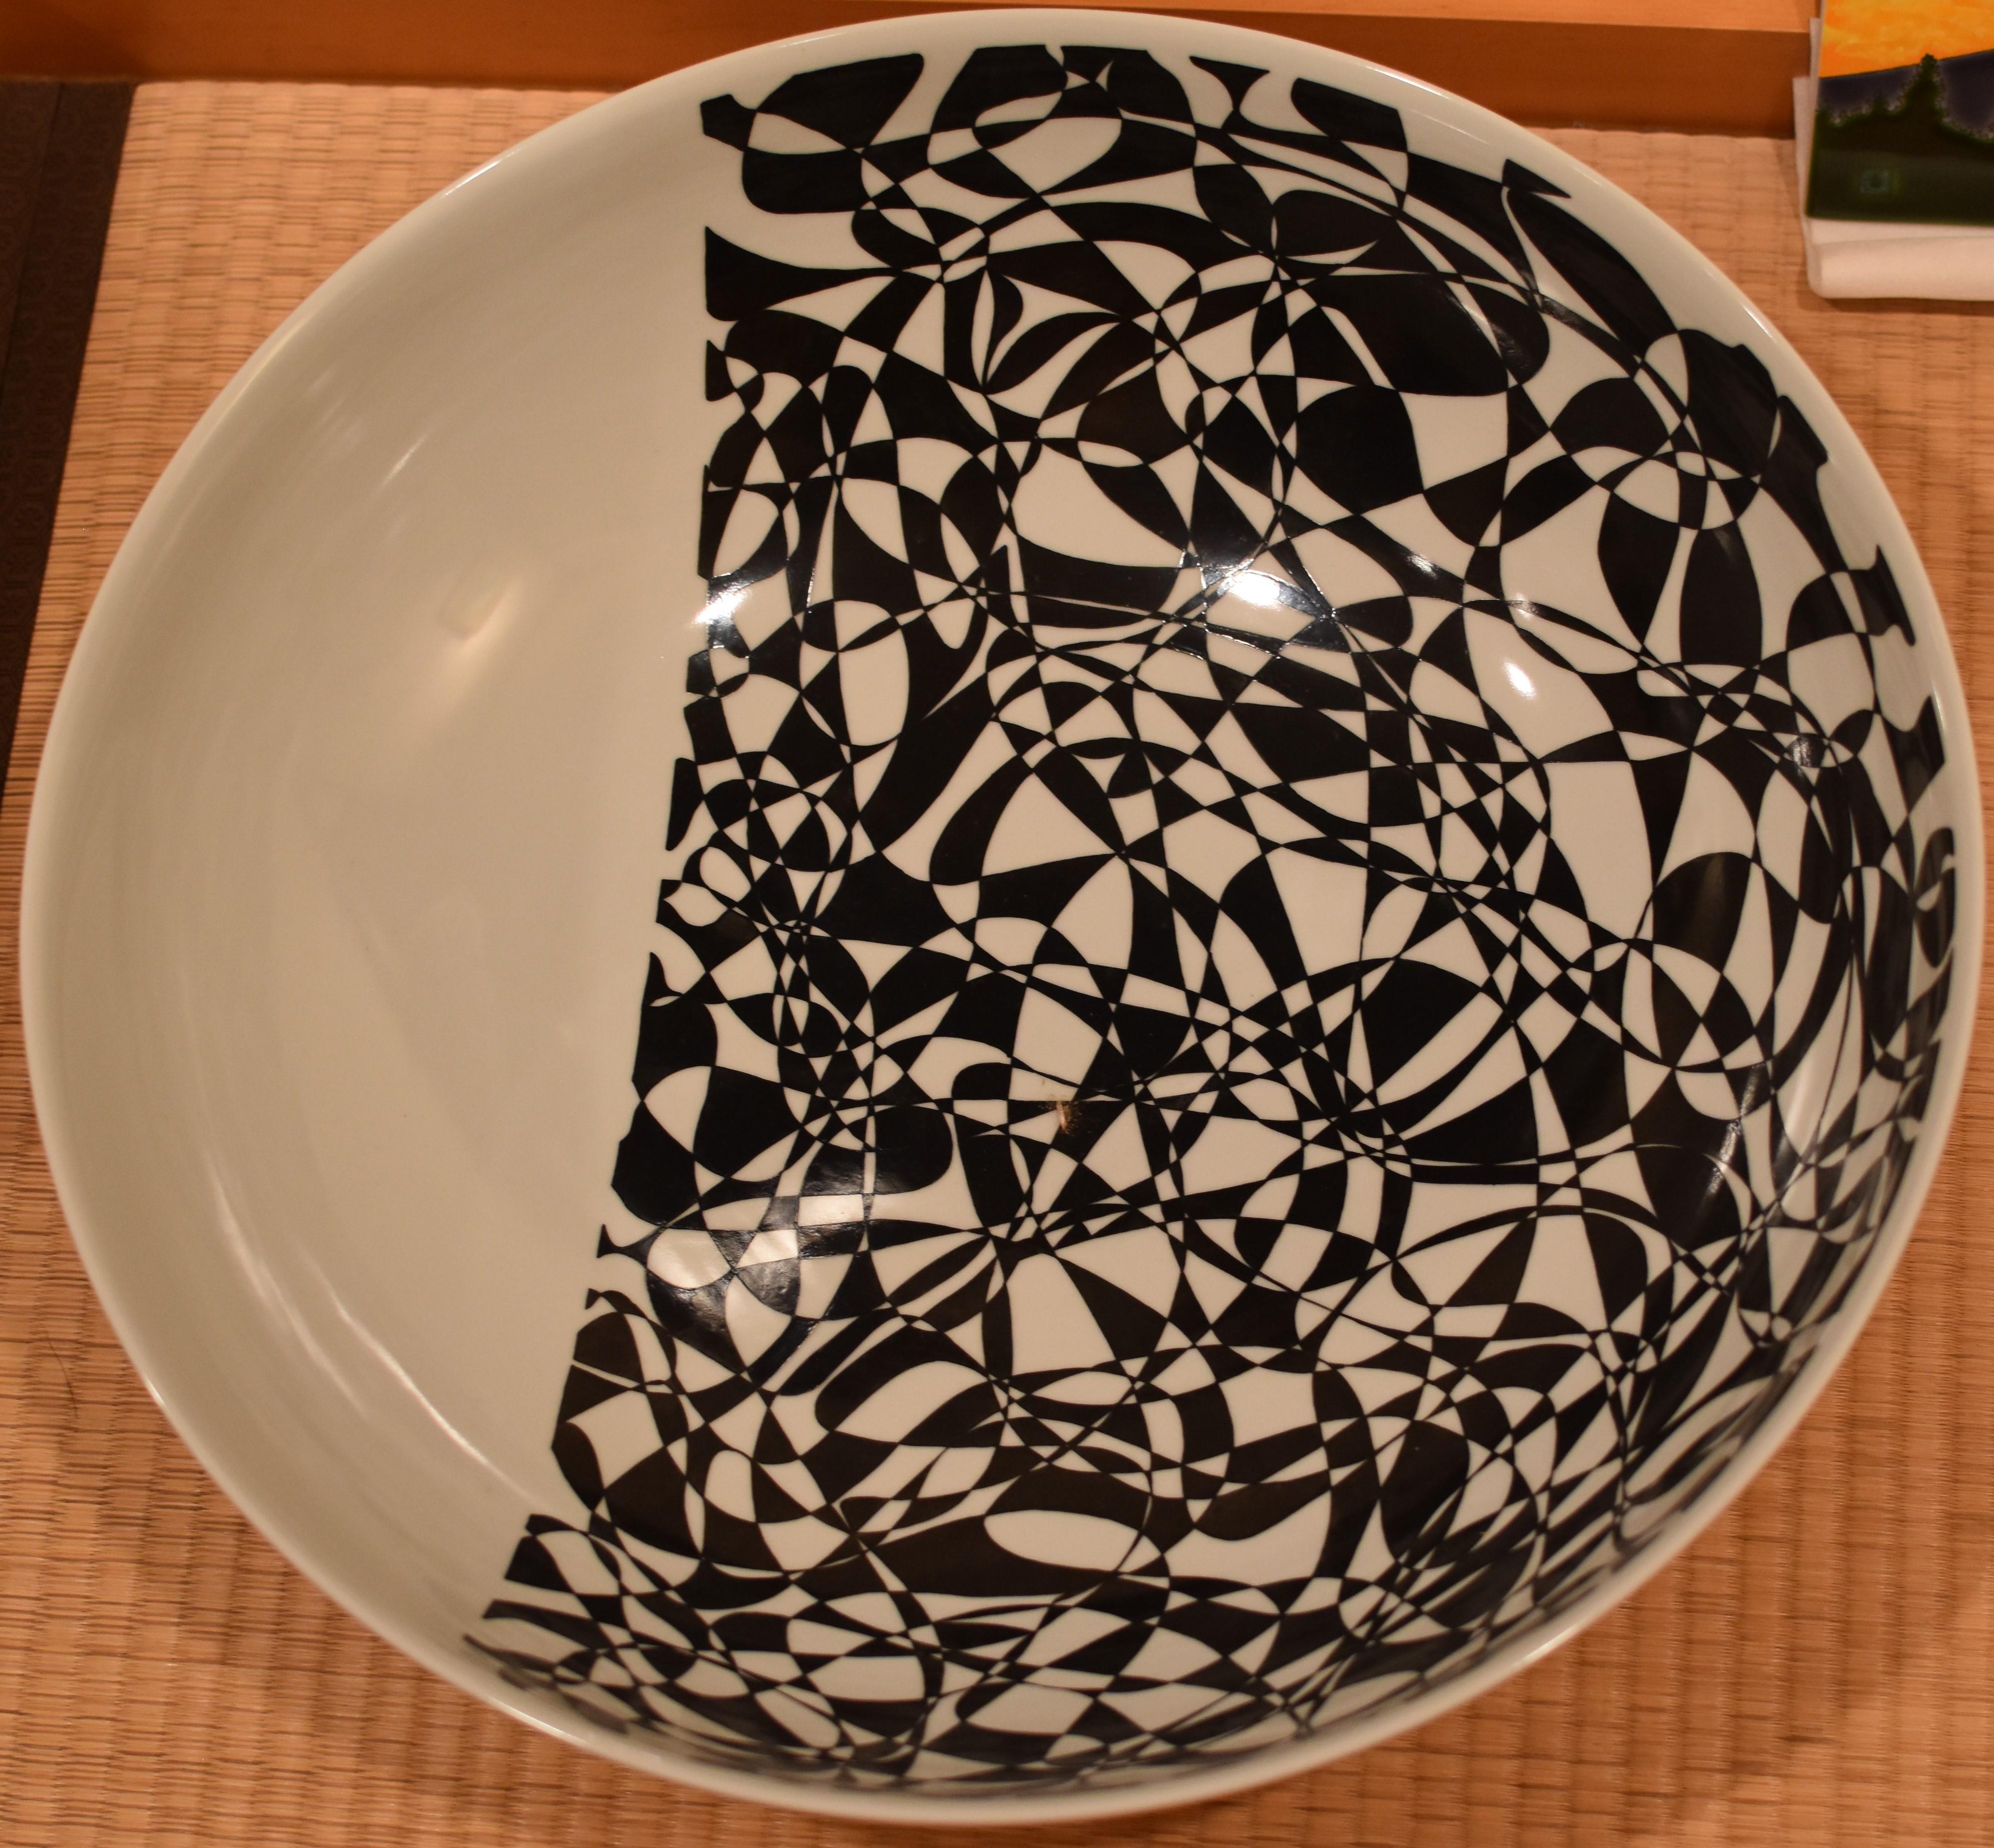 Modern Japanese Contemporary Black White Porcelain Vase by Master Artist For Sale